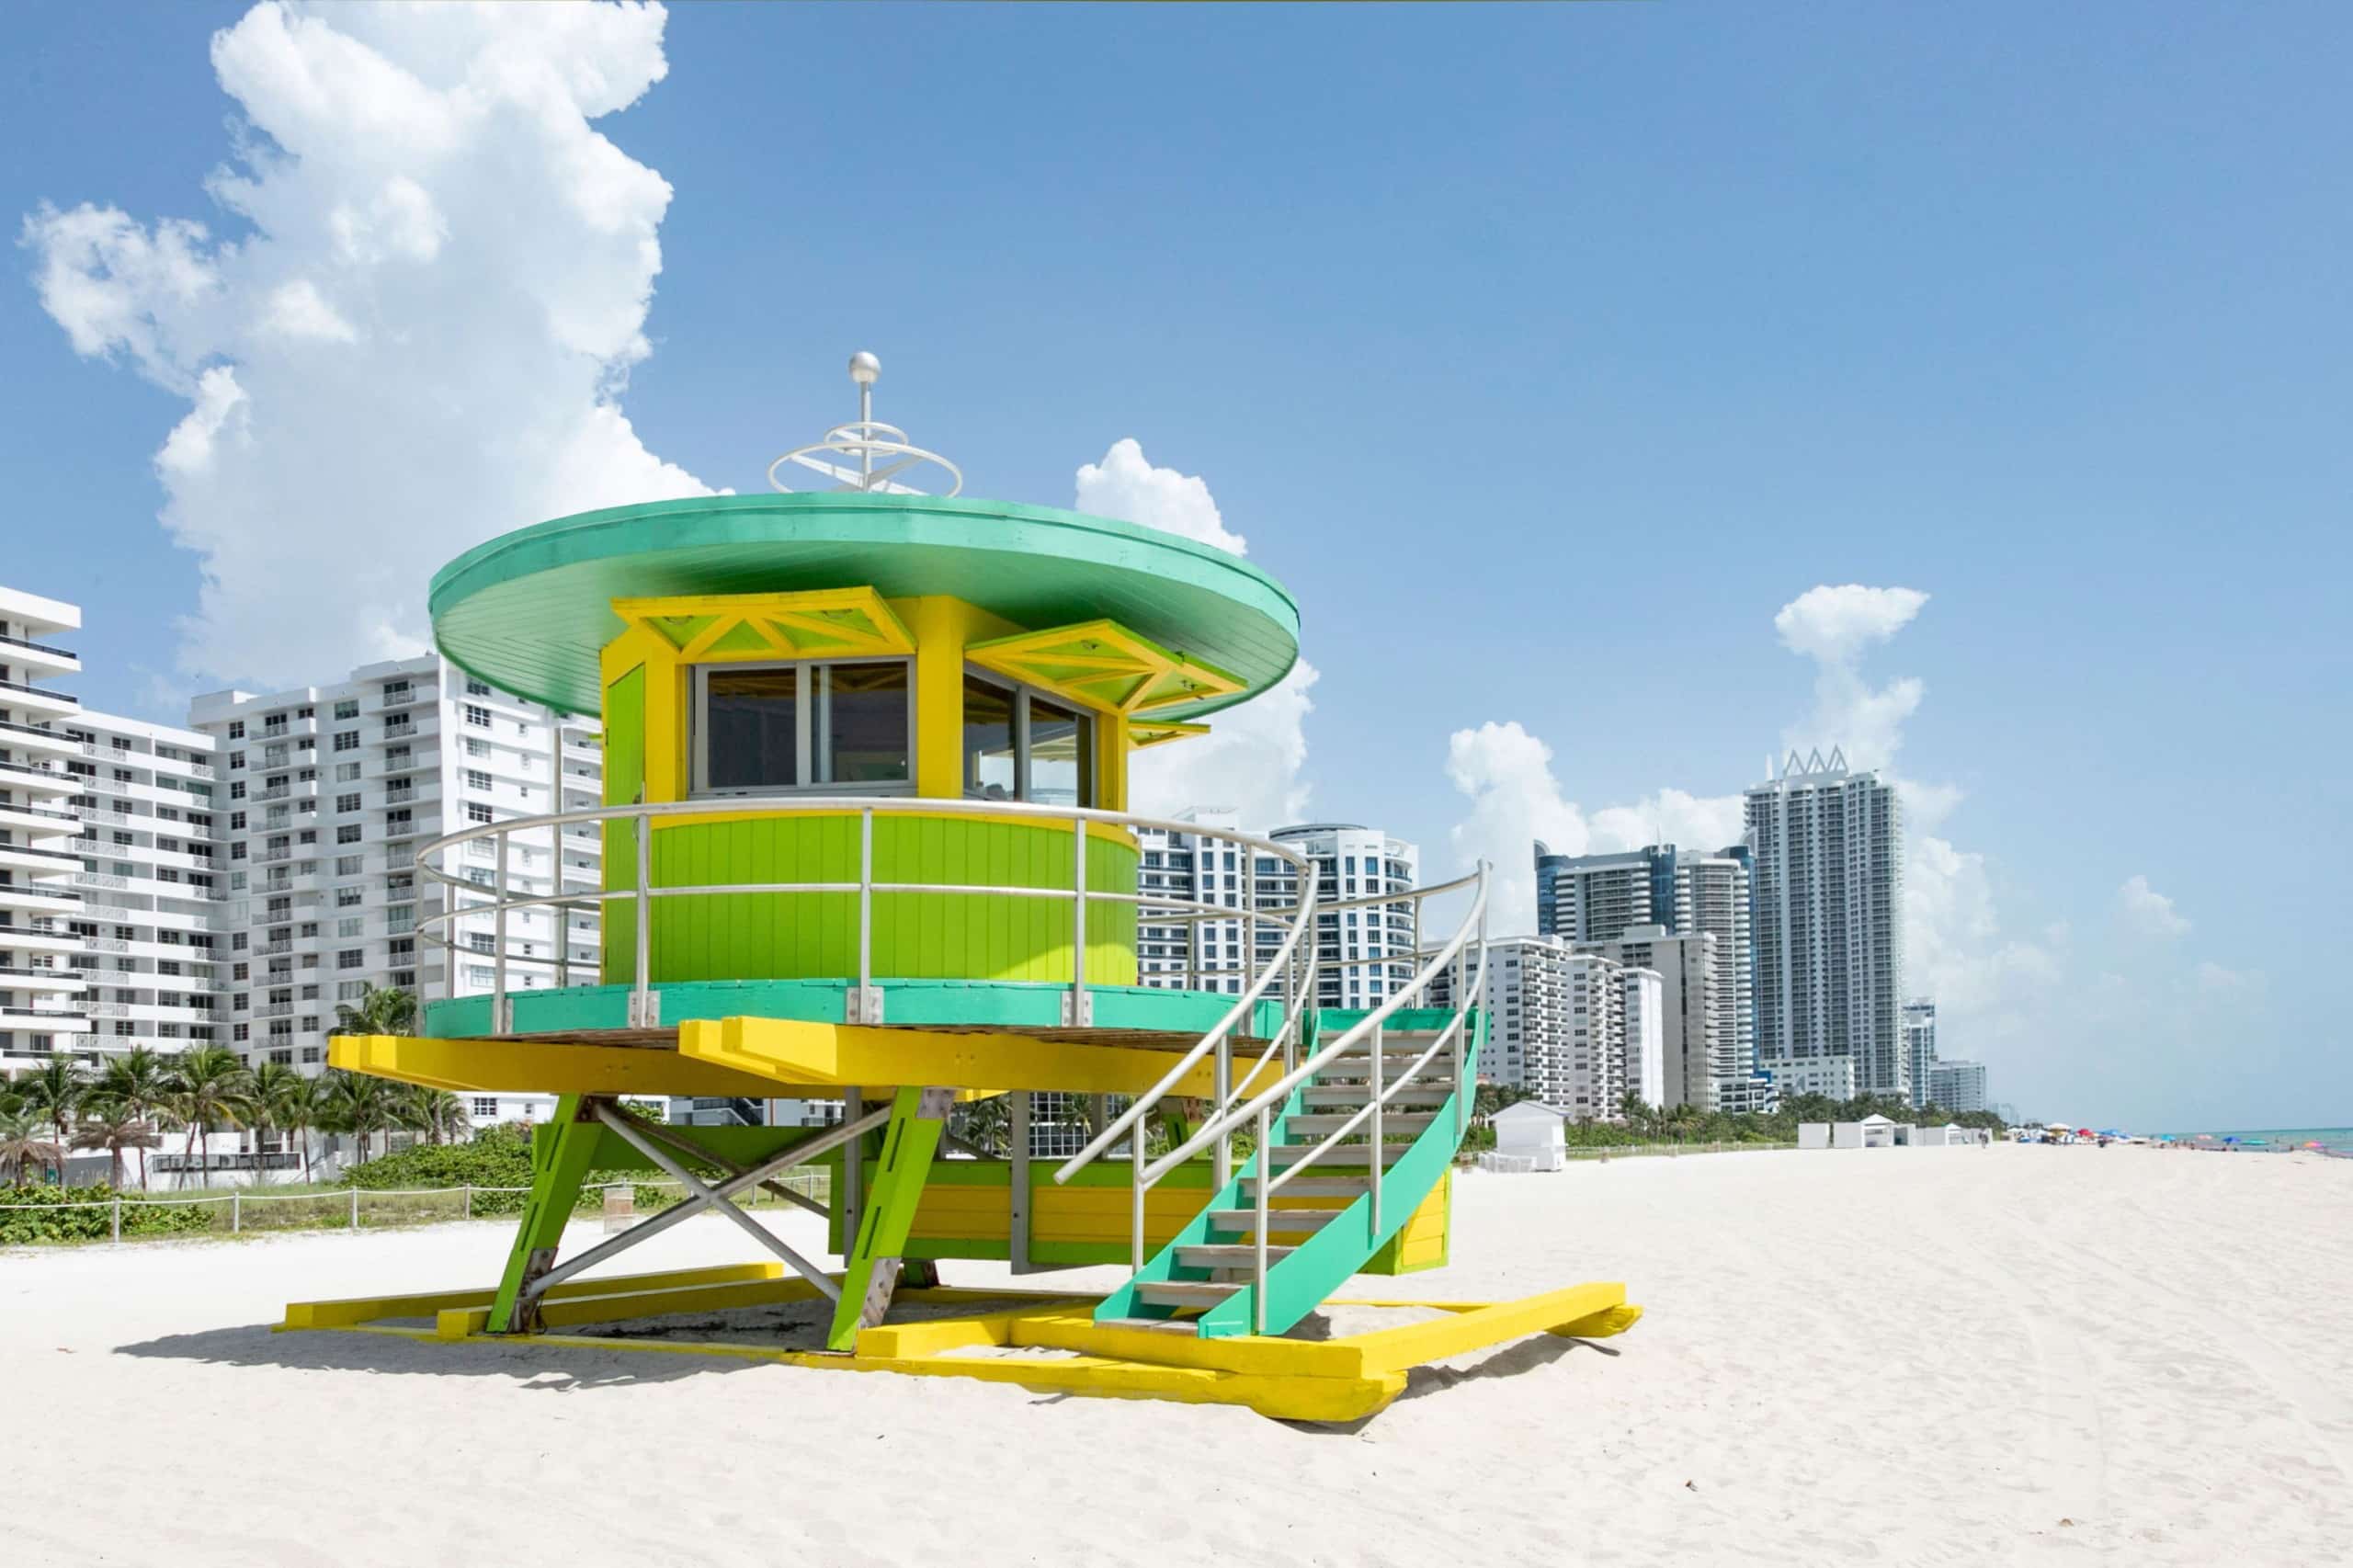 Ein rundes Strandwächterhäuschen in Grüntönen und Gelb am Strand, im Hintergrund mehrere Hochhäuser. Miami Beach, Lifeguard Tower, William Lane, Foto: Archiv Architekten